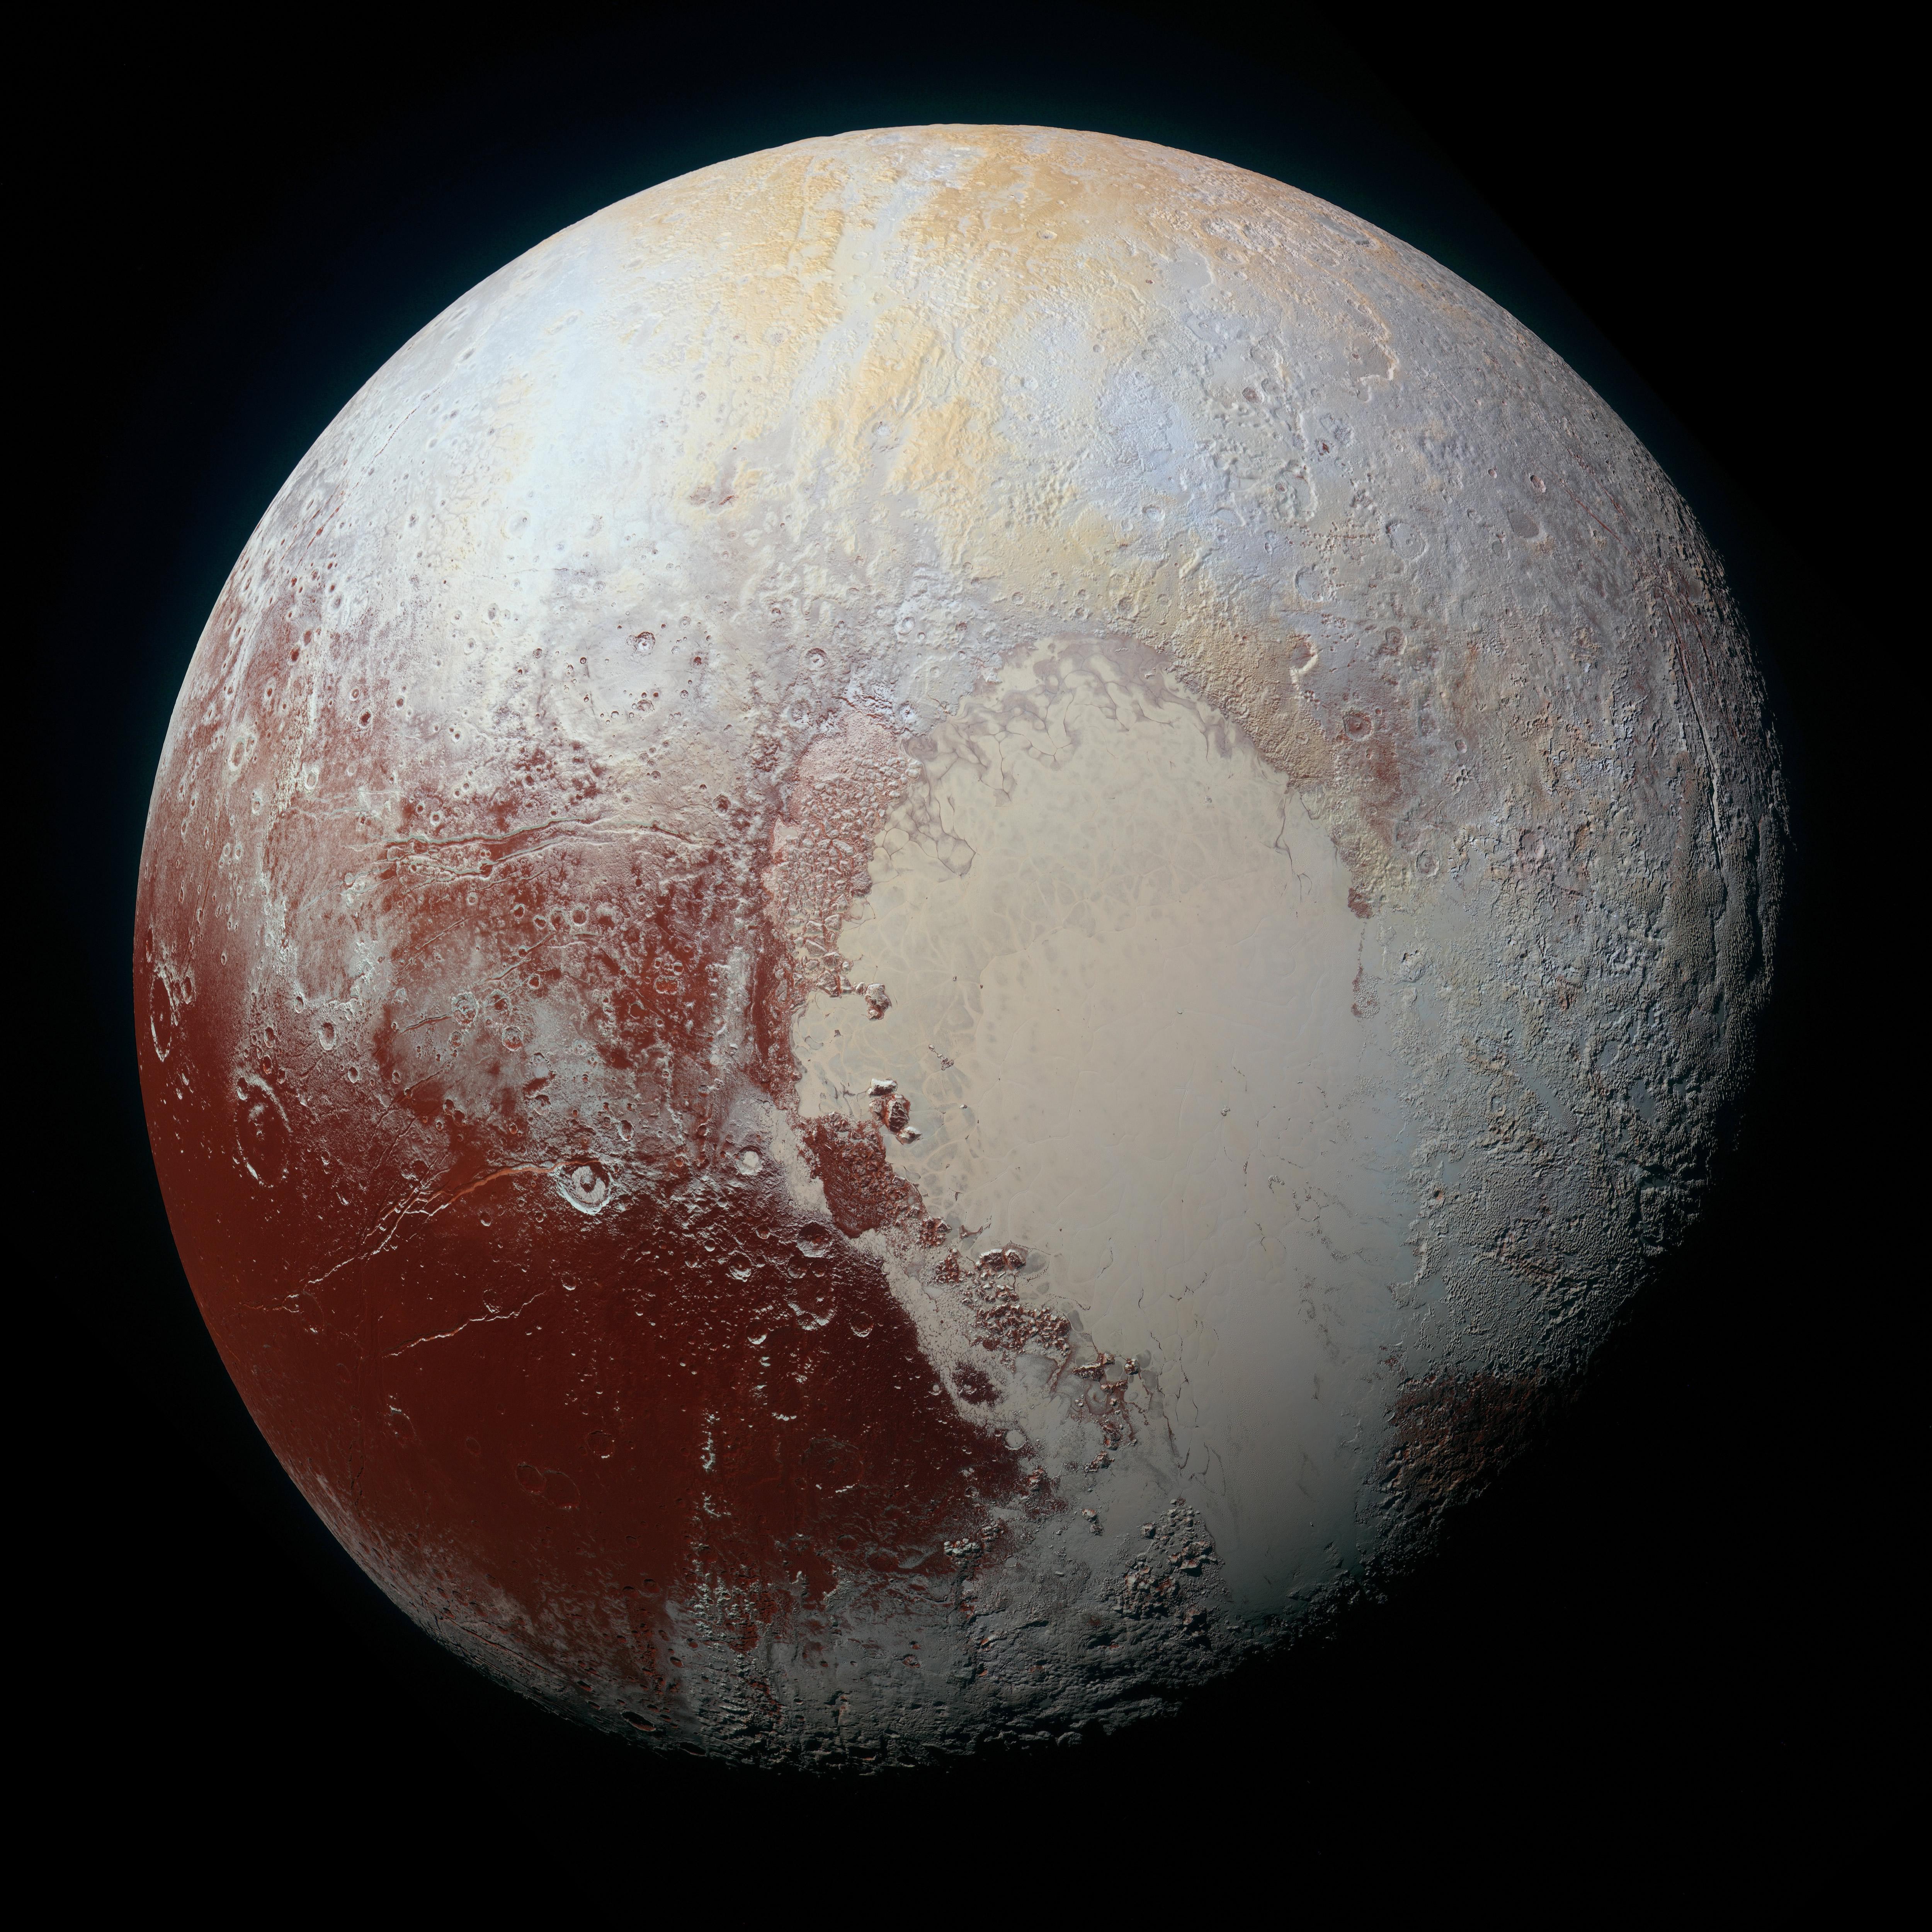 Bild: Ansicht von Pluto, die die NASA-Raumsonde New Horizons am 14. Juli 2015 aufgenommen hat.© NASA/Johns Hopkins University Applied Physics Laboratory/Southwest Research Institute. (mediarelations.unibe.ch)